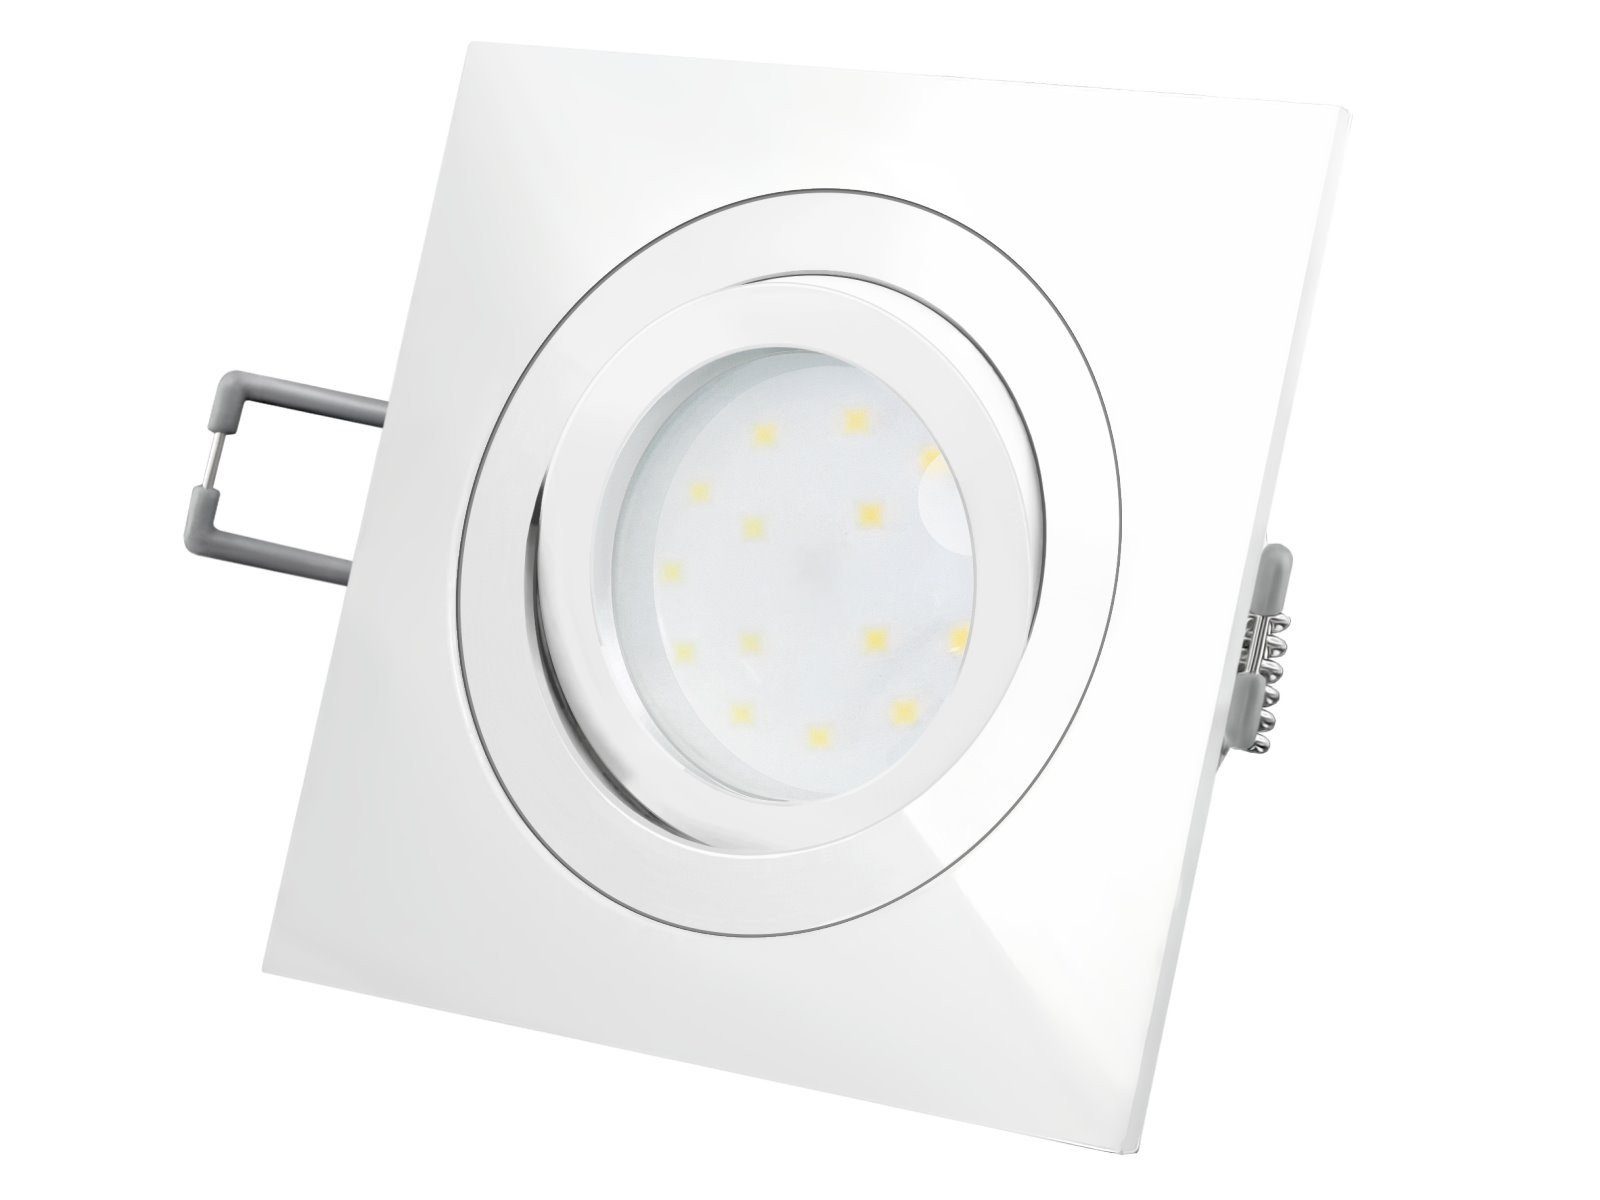 SSC-LUXon LED mit weiss, und QF-2 Warmweiß Einbaustrahler LED-Modul flach schwenkbar 230V, LED-Einbauleuchte